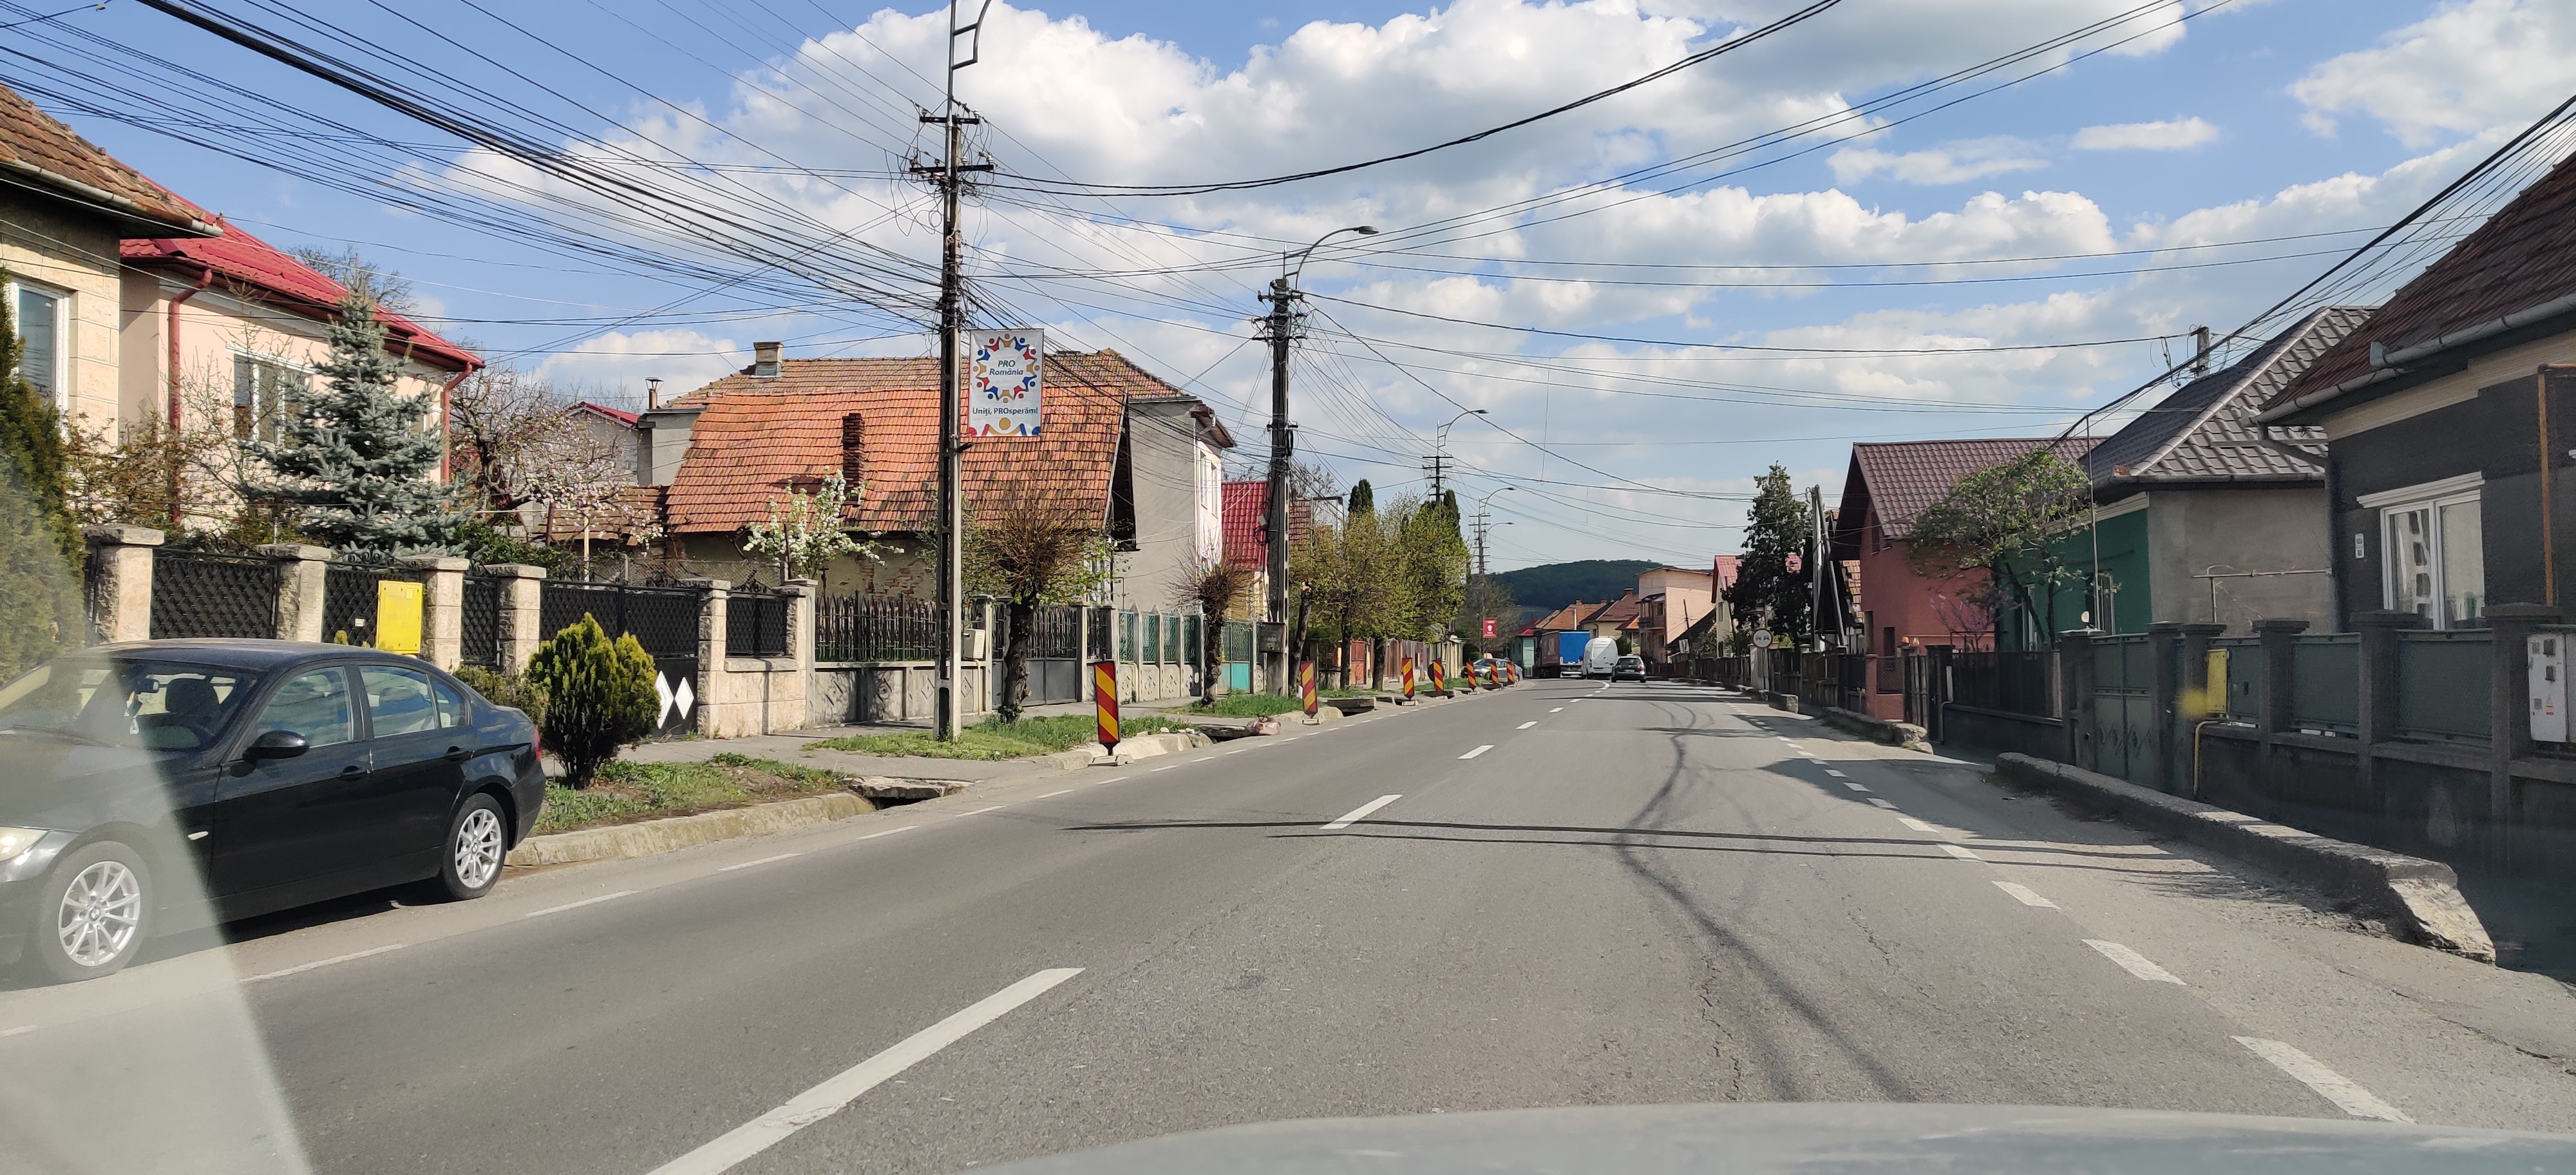 2020.04.24 Restricționare trafic în vederea reabilitării DN1 Fi în Comuna Baciu (strada Transilvaniei)